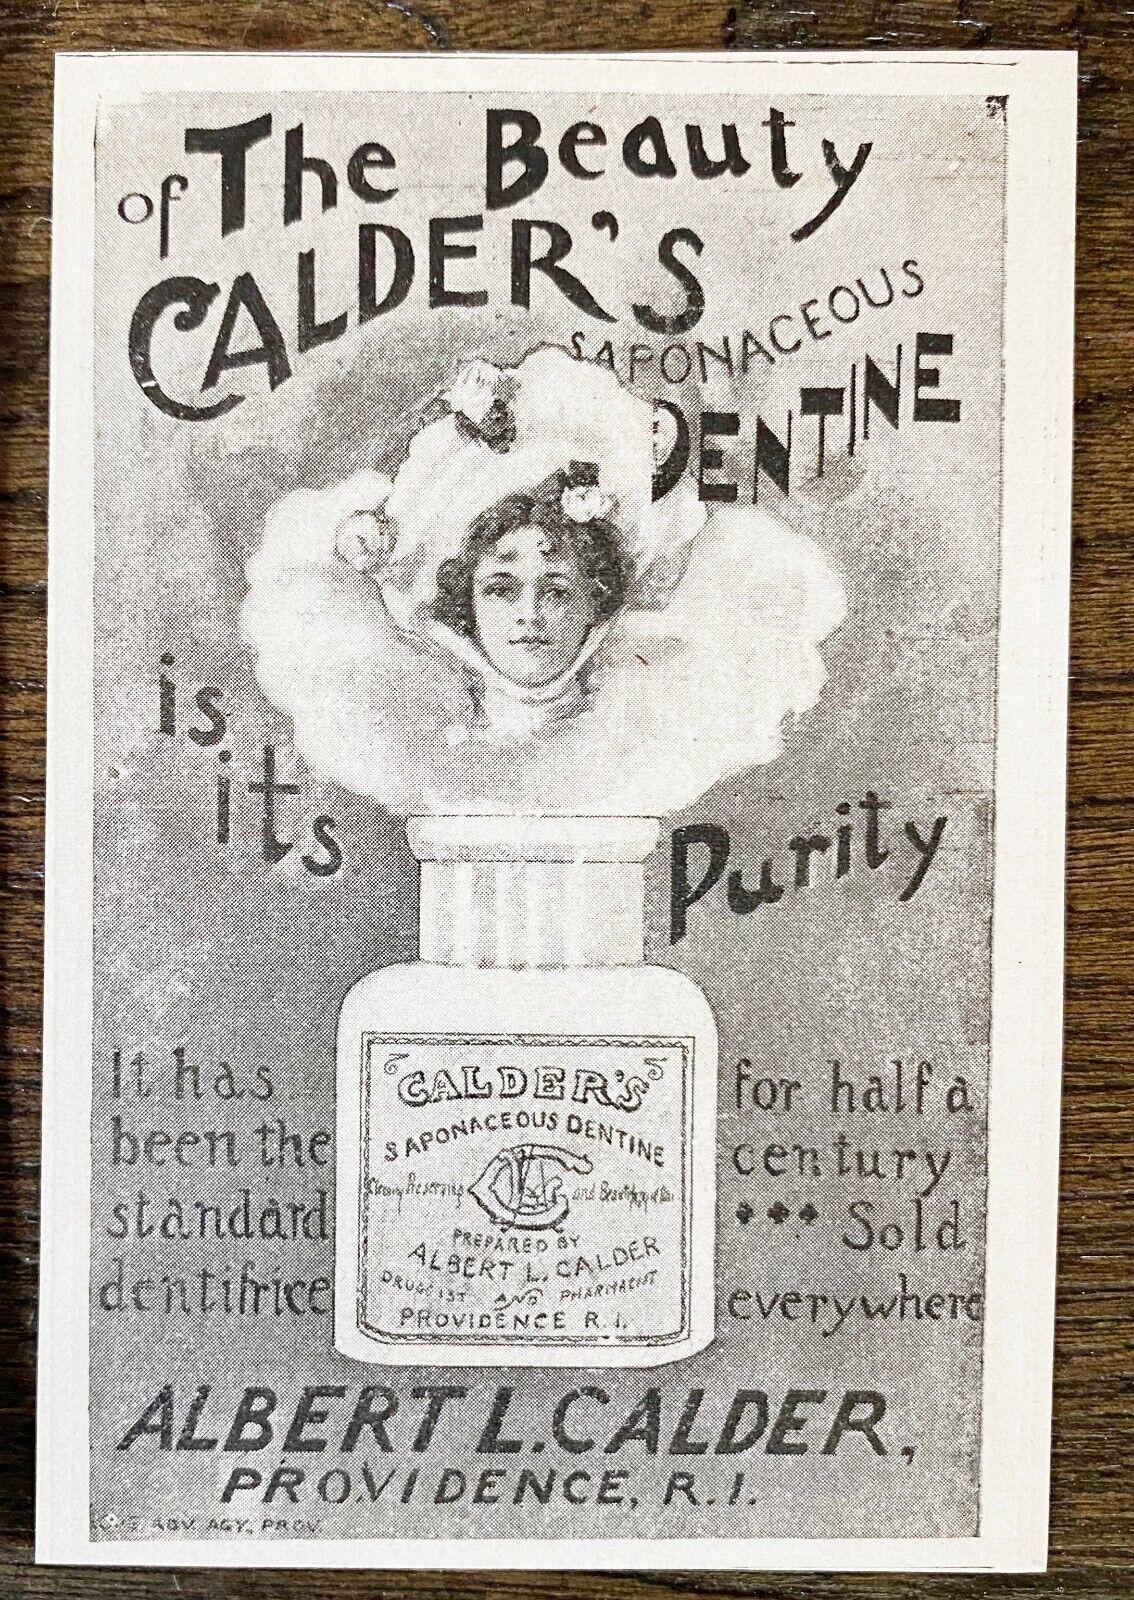 Antique 1890s CALDER'S DENTINE Tooth Powder Dentifrice Typography Print Ad Lot10 Без бренда - фотография #3